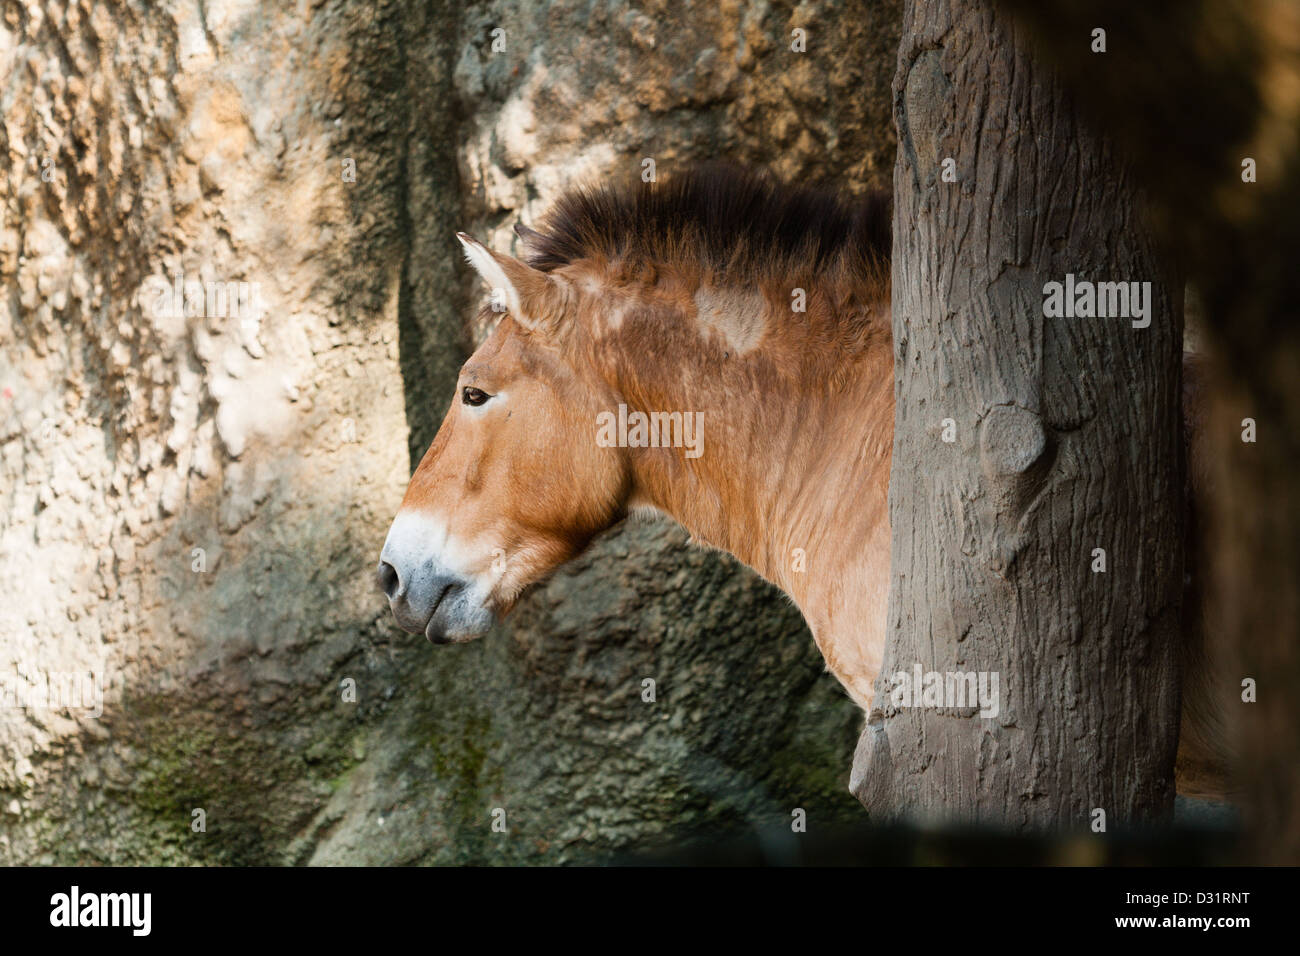 Cavallo di Przewalski (Equus ferus przewalskii) a.k.a. Cavallo Dzungarian, testa, criniera e pelliccia, guardando verso la parte anteriore, lo Zoo di Taipei a.k.a. Lo Zoo di Muzha, Taiwan Foto Stock